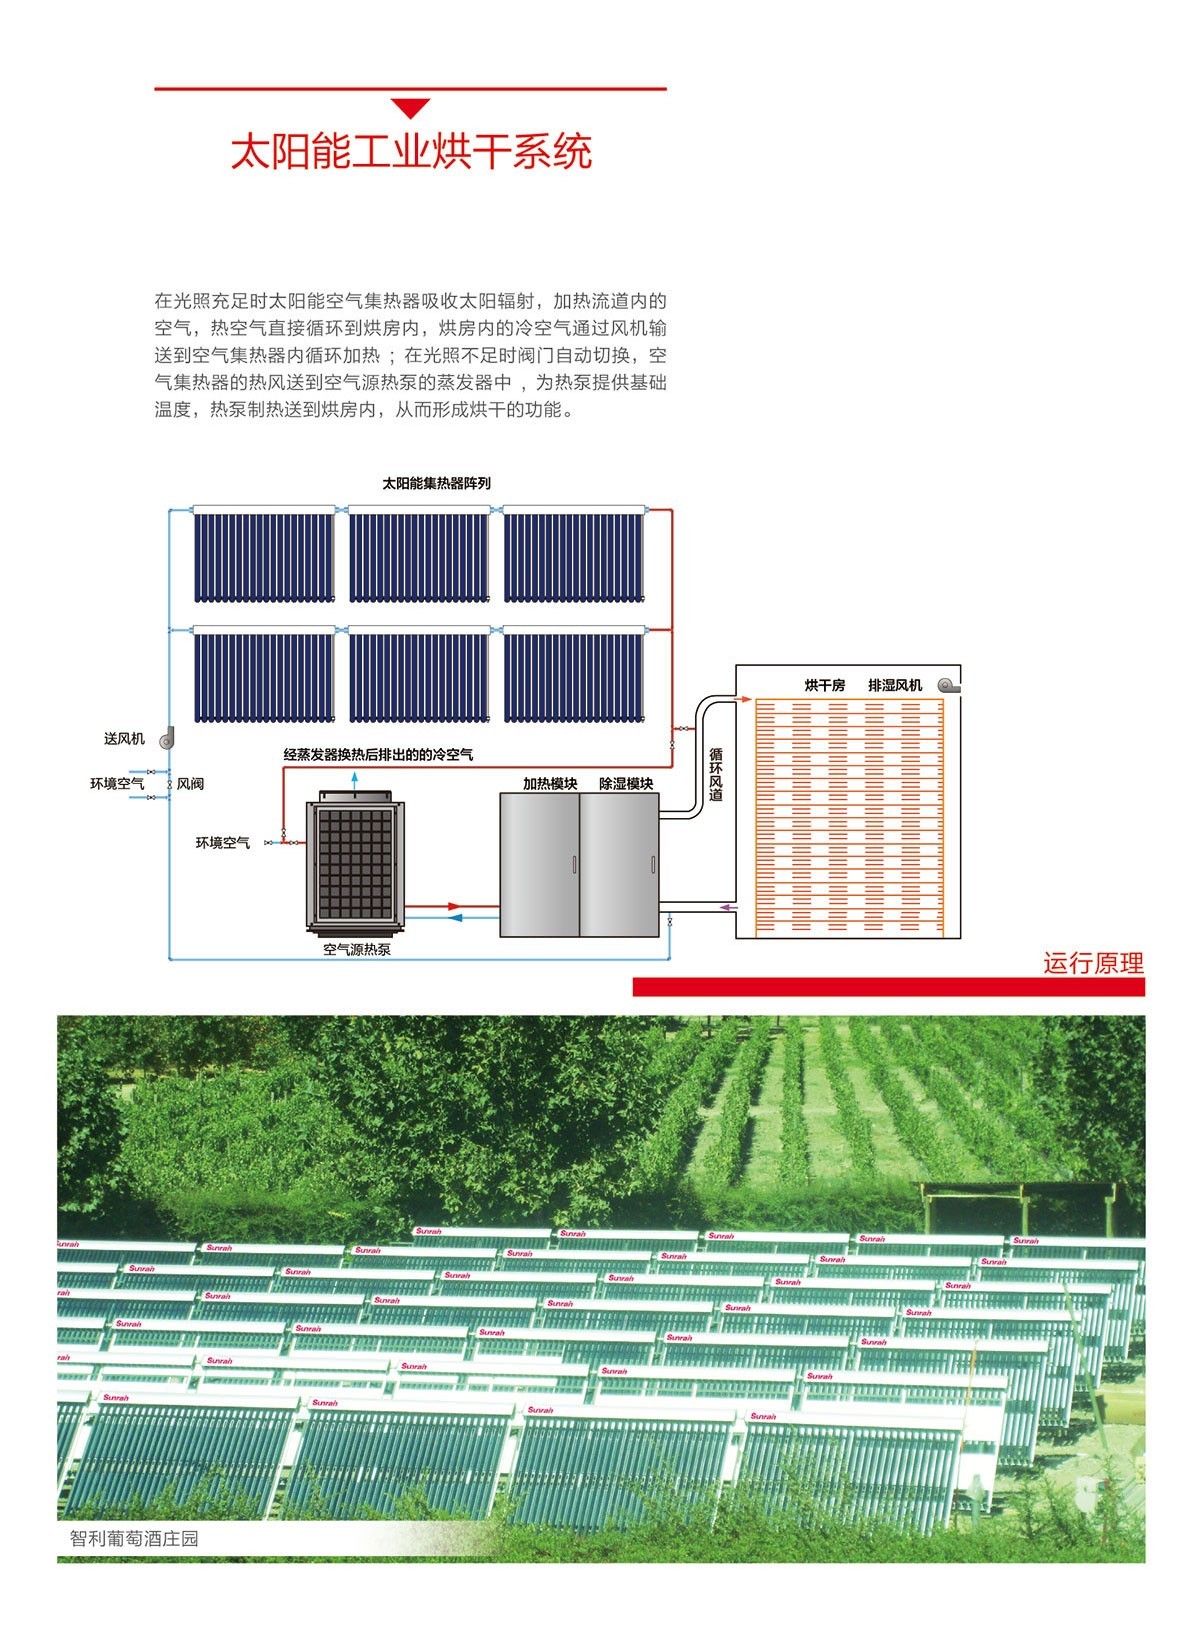 太阳雨太阳能|太阳能热水器|燃气热水器|电热水器|抽油烟机|燃气灶具